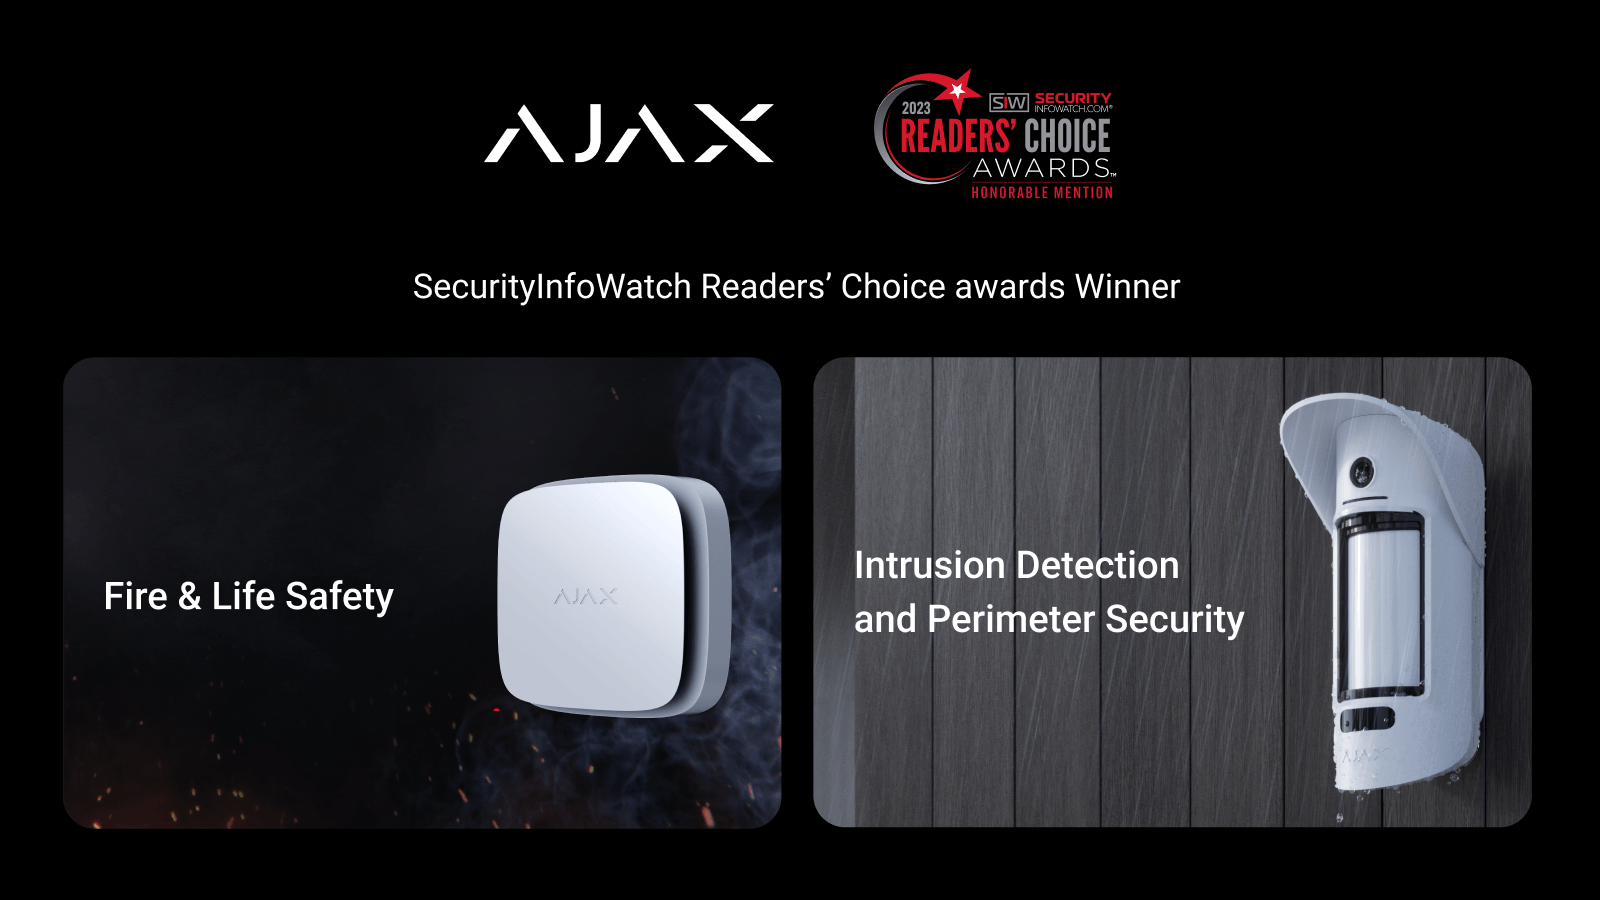 Ajax Systems, ABD'de düzenlenen SecurityInfoWatch.com Readers’ Choice Awards'da 2 kategoride ödül kazandı